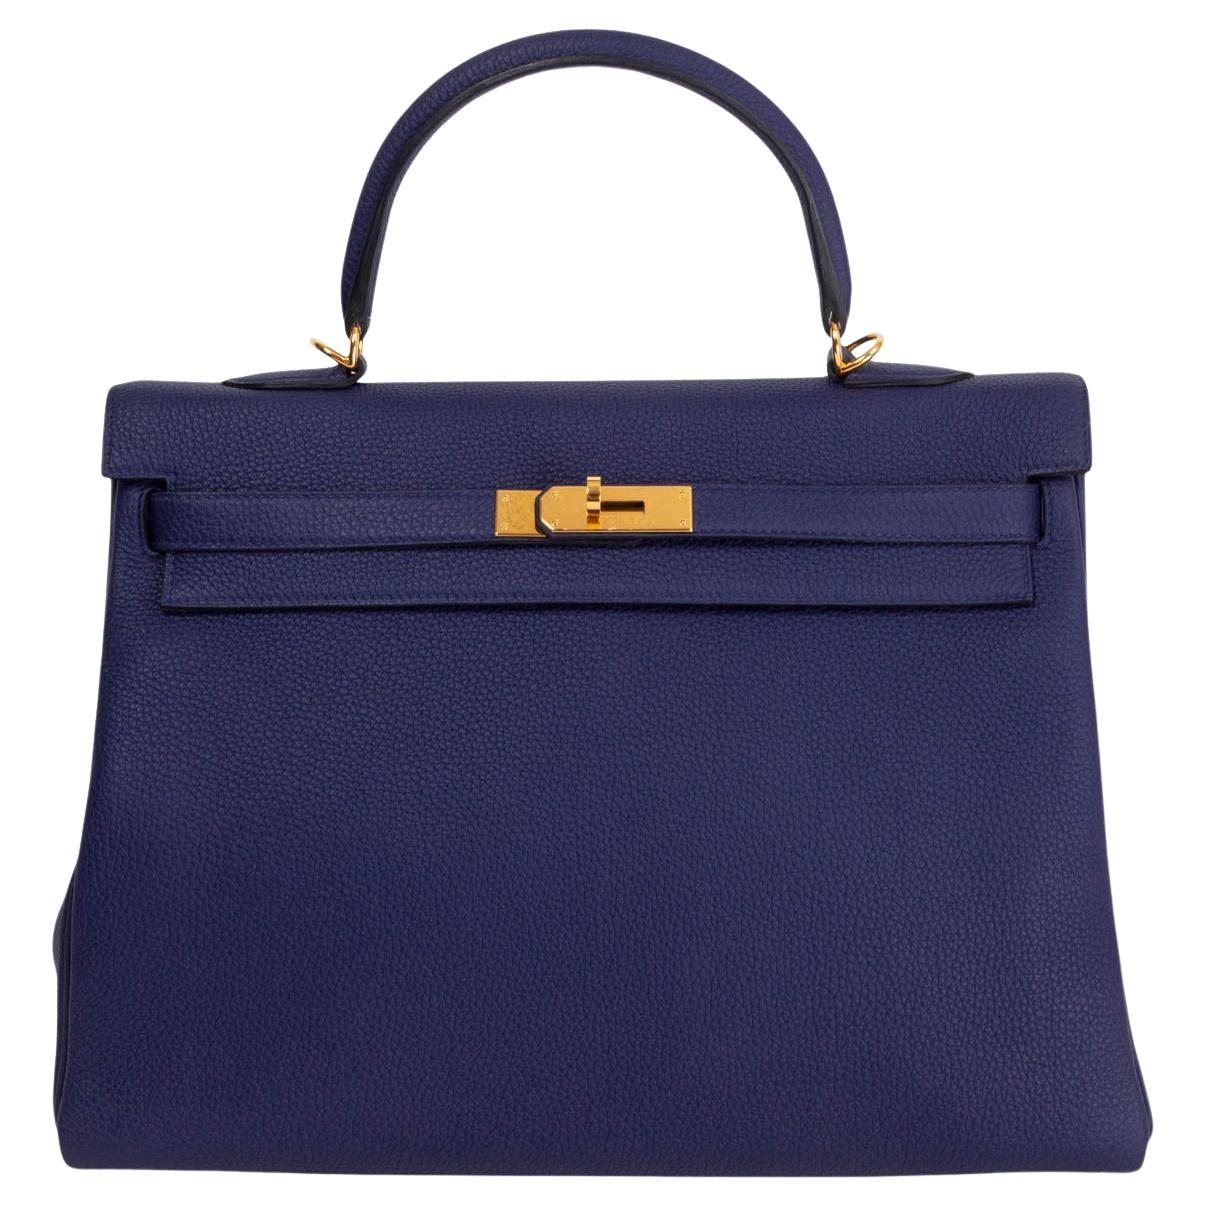 HERMES KELLY 35 RETOURNE Tasche aus blauem Togo-Leder in Gold